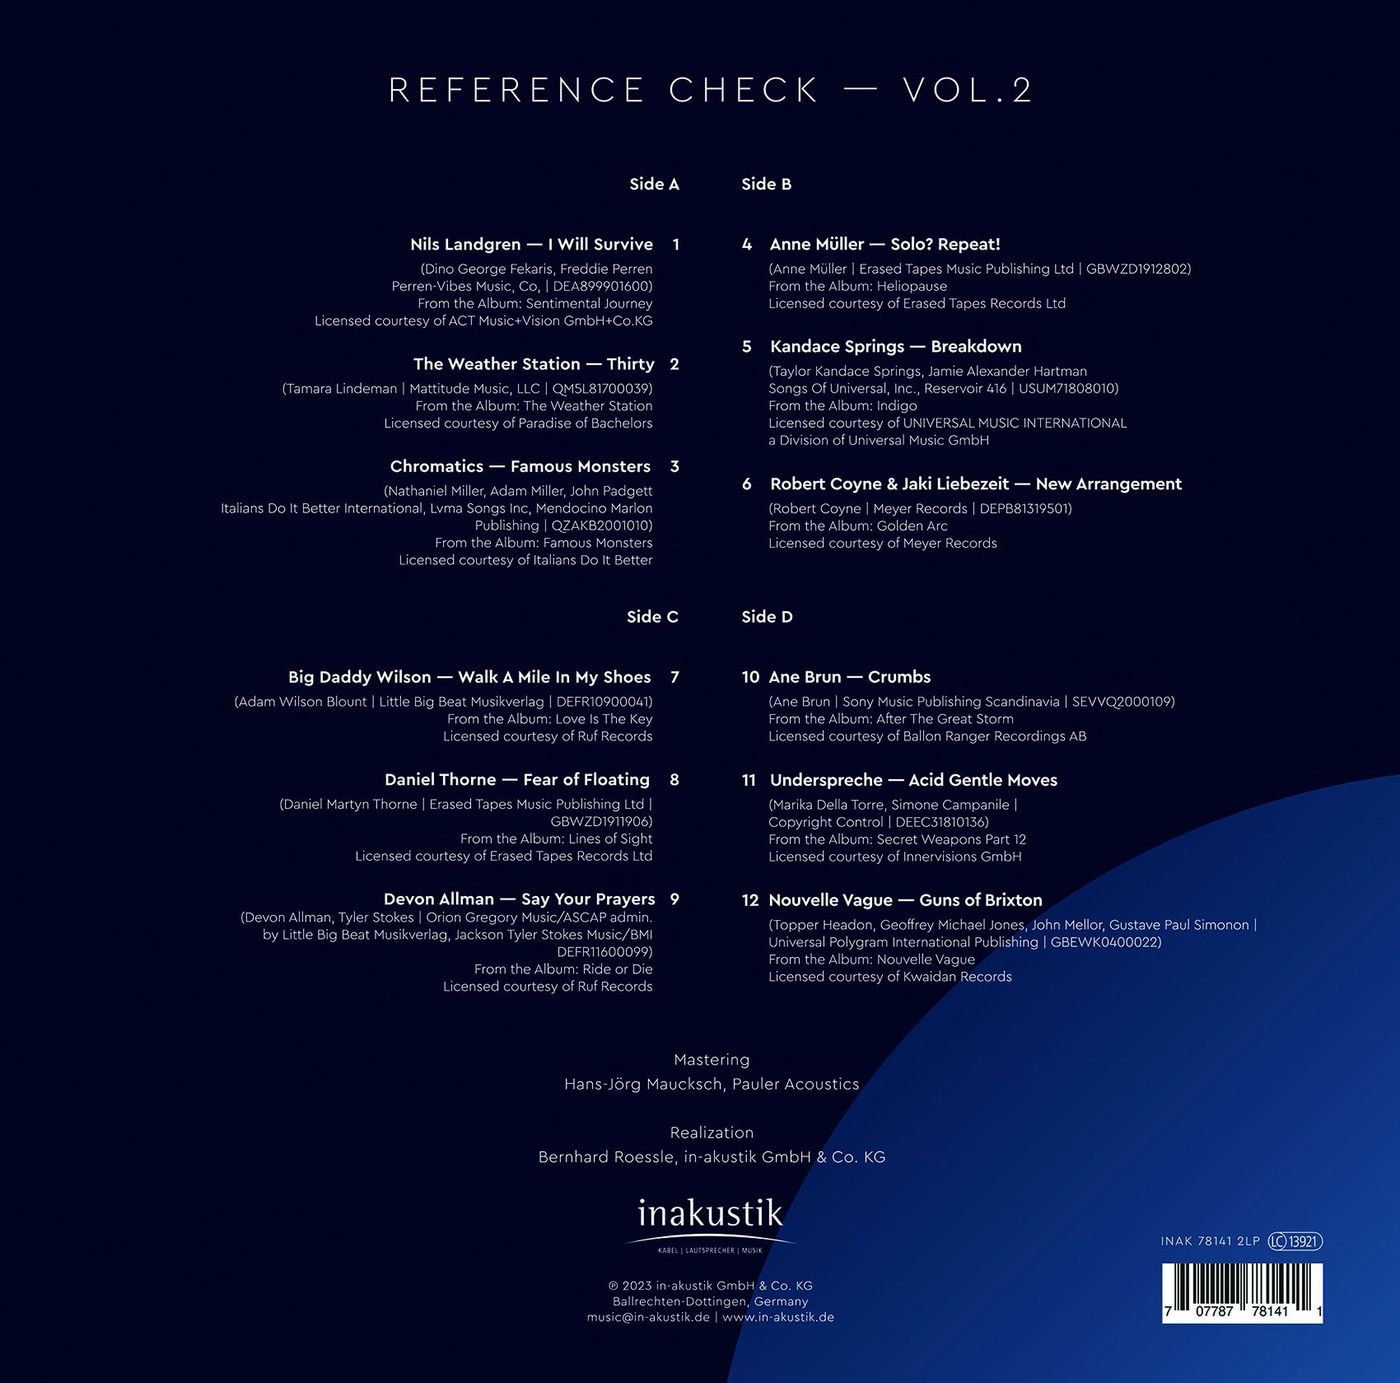 Вінілова платівка Збірник - Canton LP Reference Check Vol. II